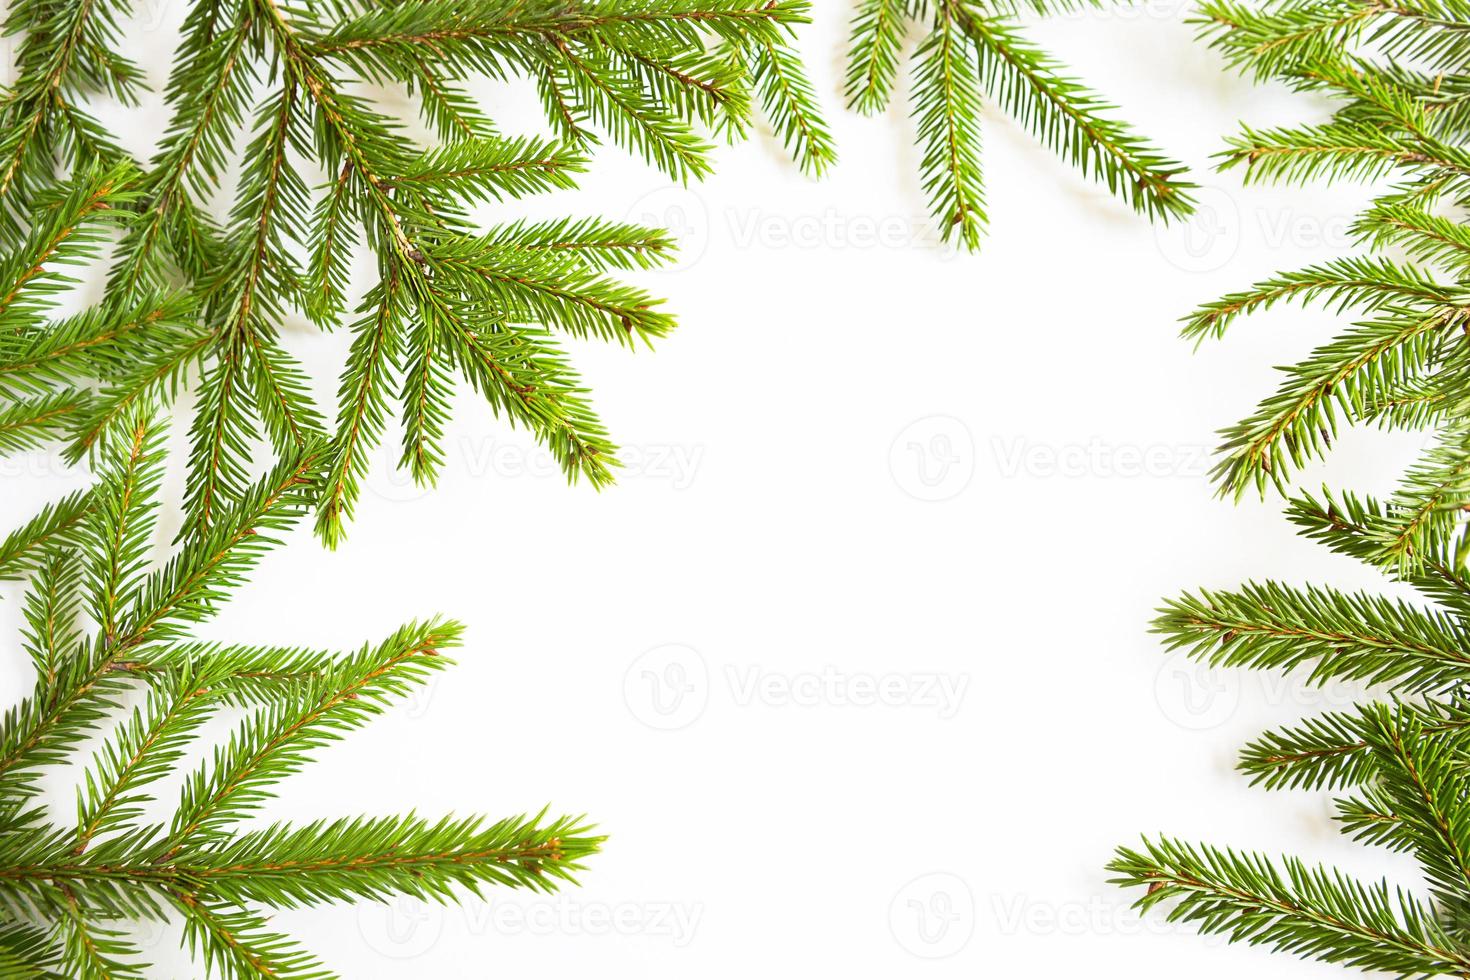 natuurlijk frame van verse groene sparren takken op een witte achtergrond. kerstmis, nieuwjaar, kerstboom. kopieer ruimte foto